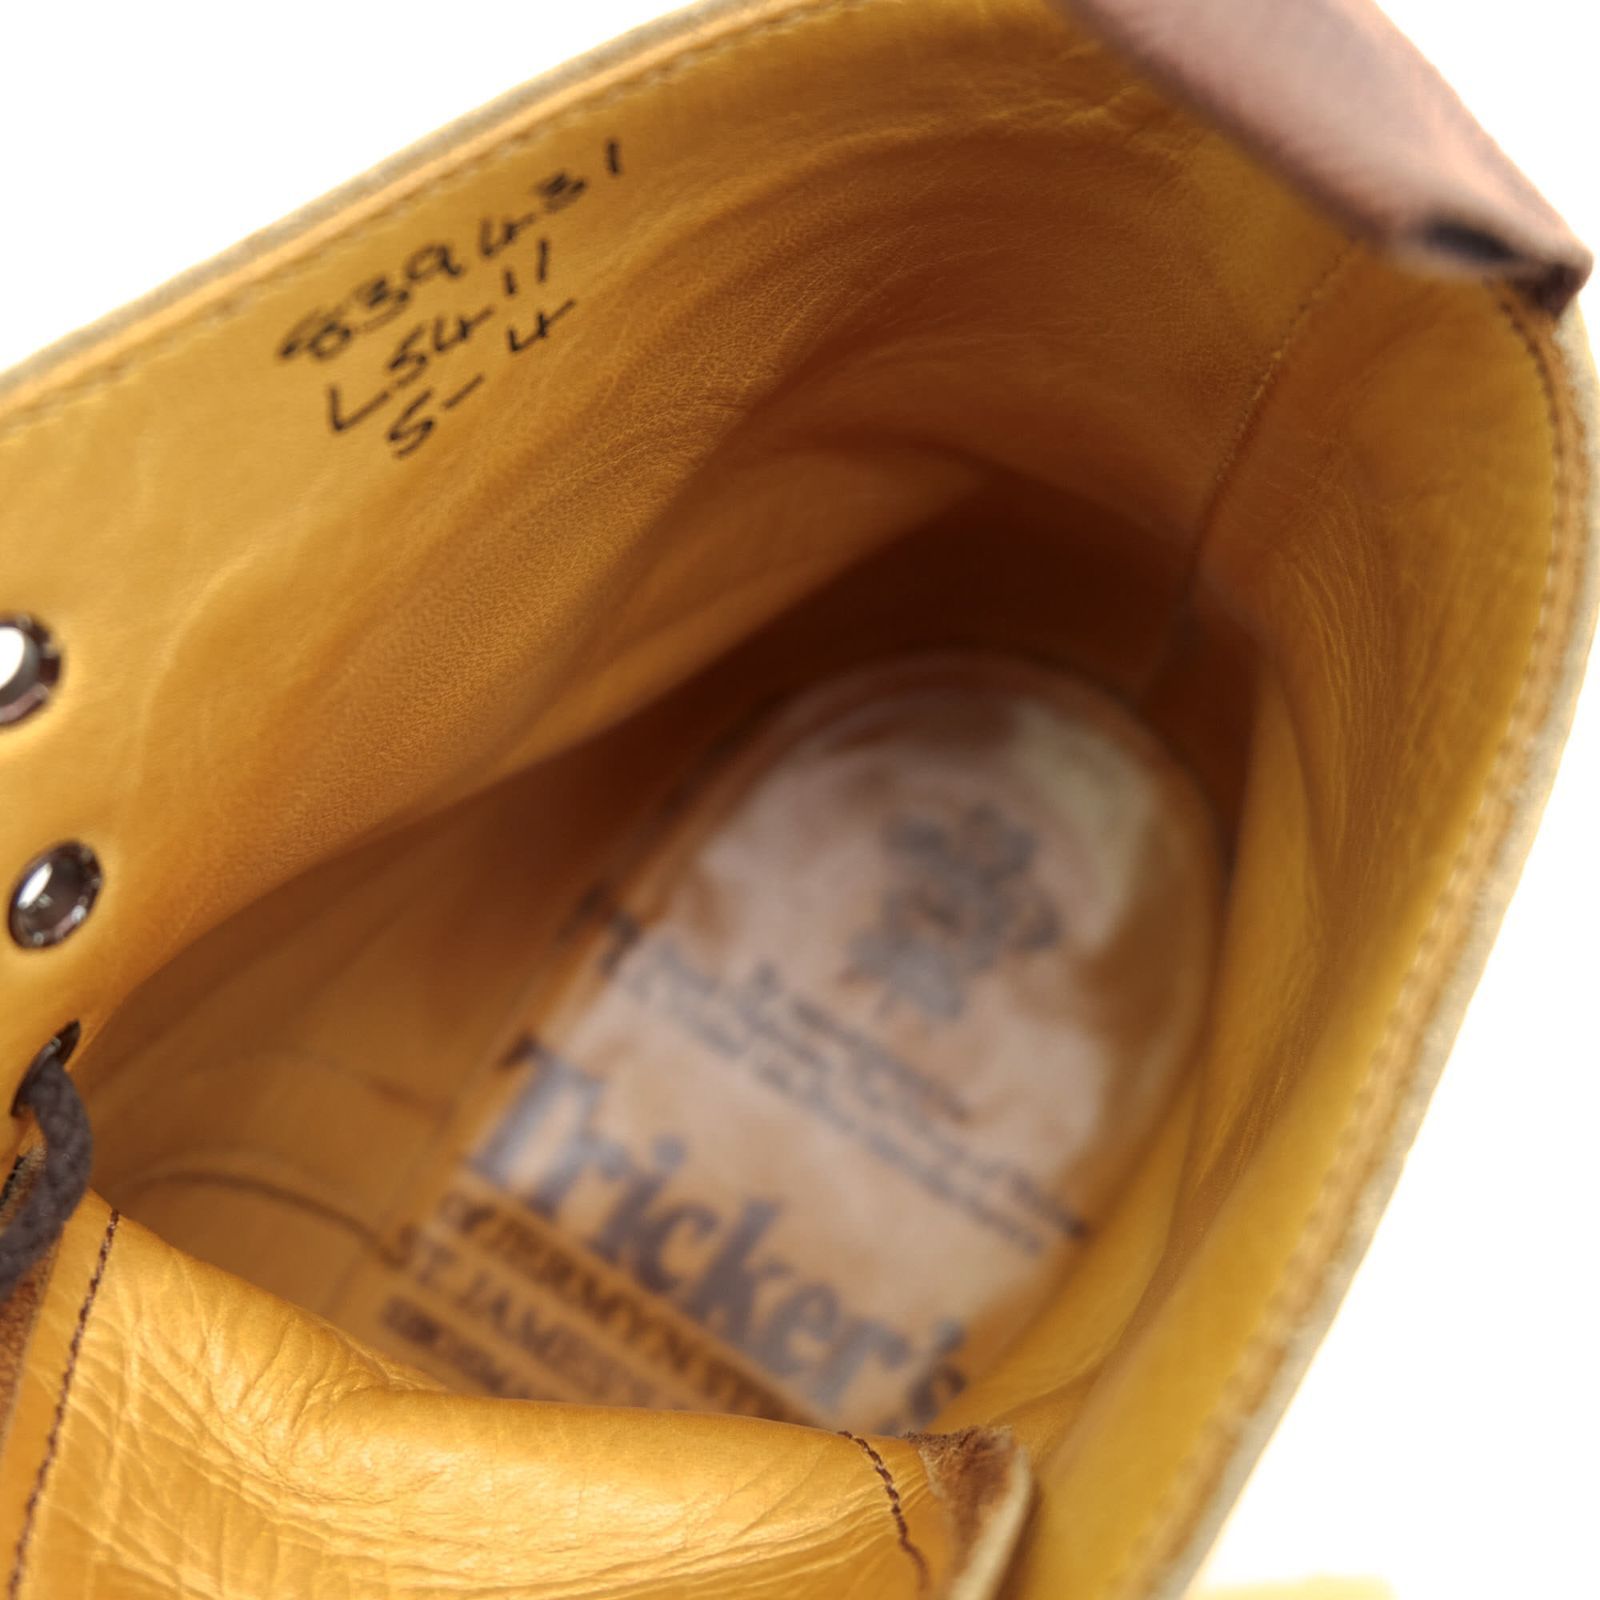 トリッカーズ/Tricker's レースアップブーツ シューズ 靴 レディース 女性 女性用レザー 革 本革 ブラウン 茶 L5411 メダリオン カントリーブーツ ウイングチップ ウイングチップ グッドイヤーウェルト製法